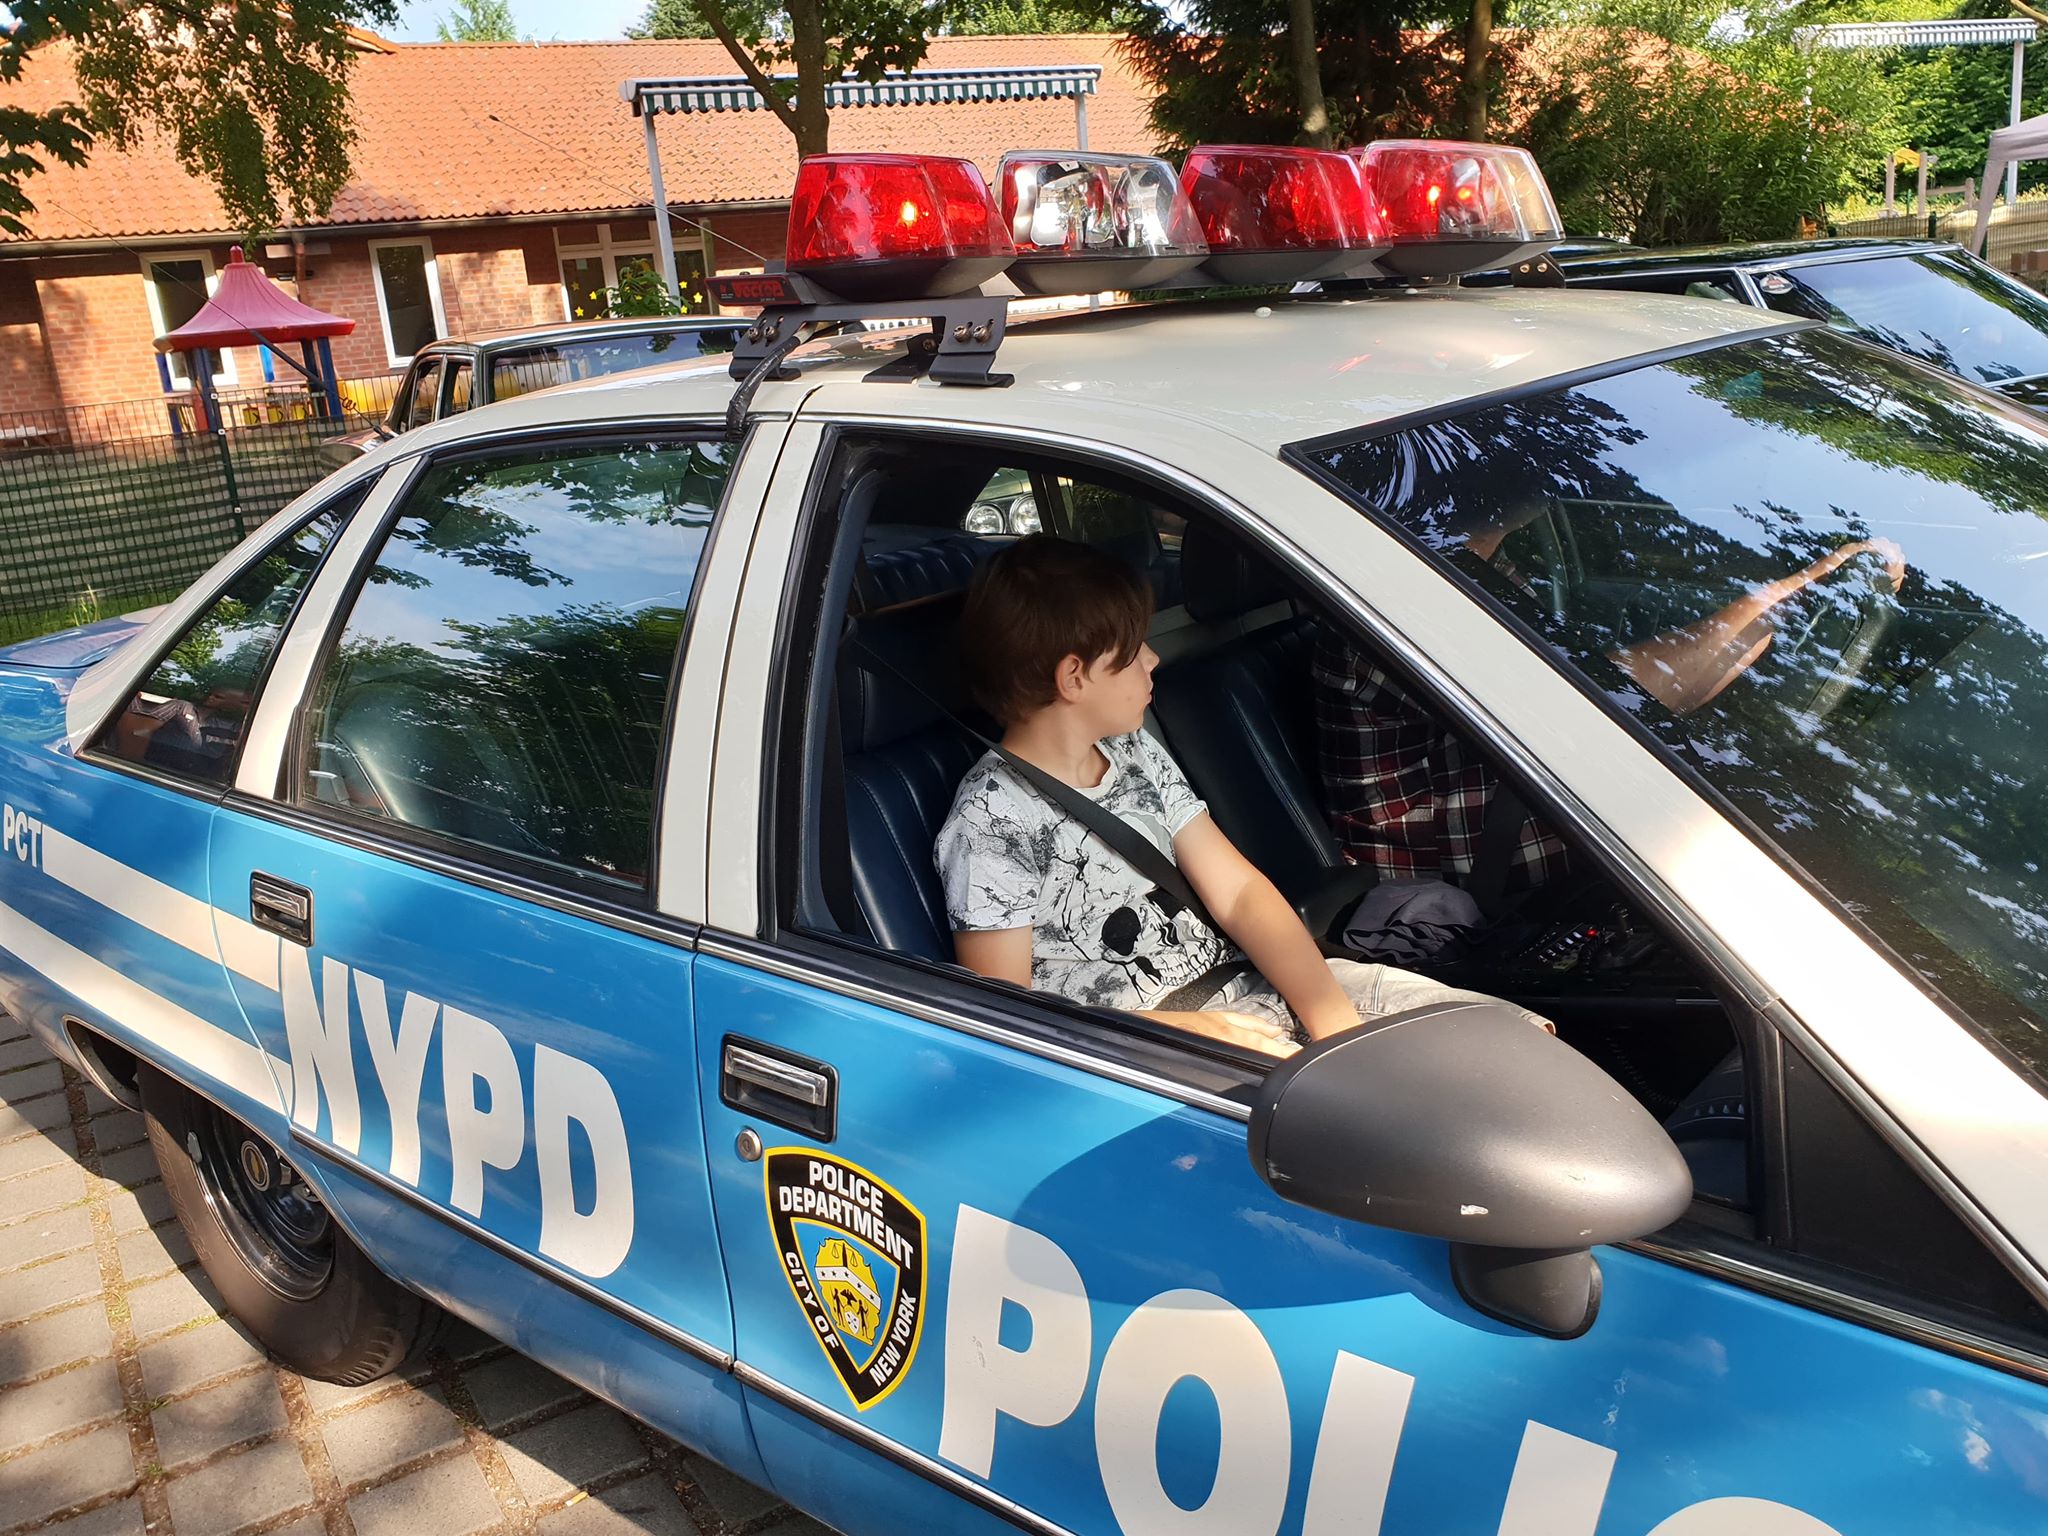 Für ein Geburtstagskind ging ein Traum in Erfüllung. Eine Fahrt in einem echten, New Yorker Police Car